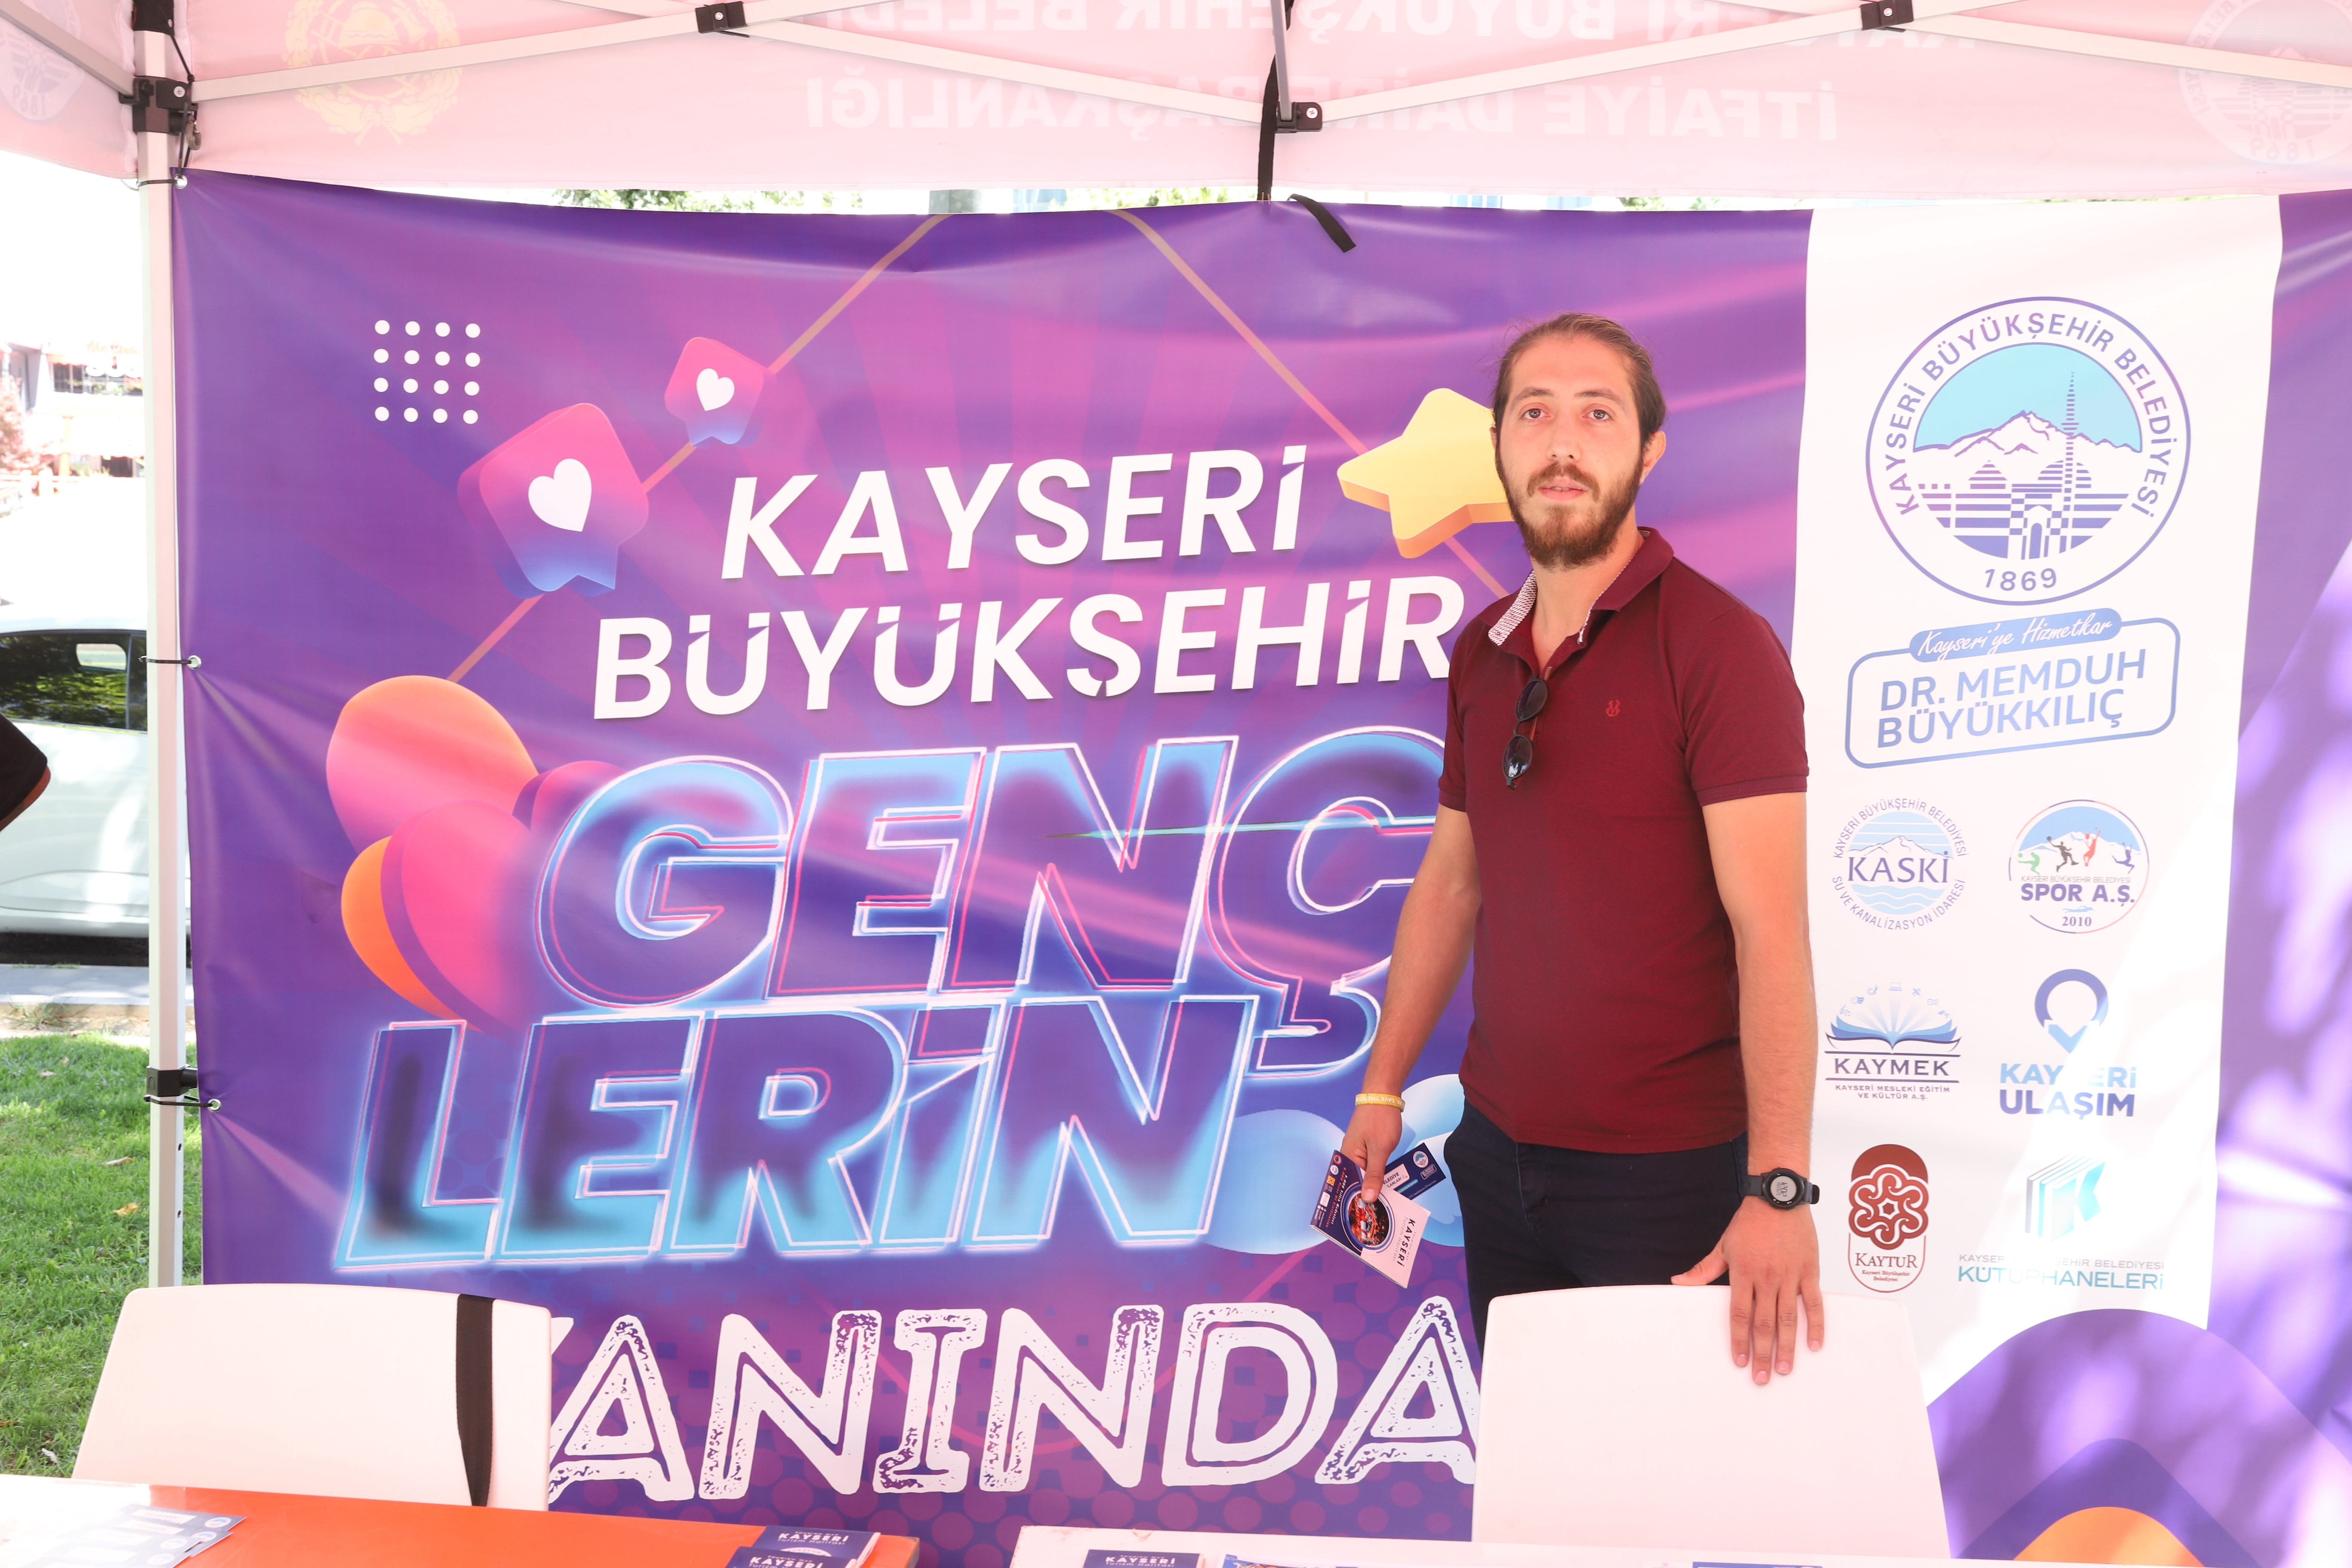 Kayseri Büyükşehir Belediyesi’nin öğrencilere rehberlik ve danışmanlık hizmeti